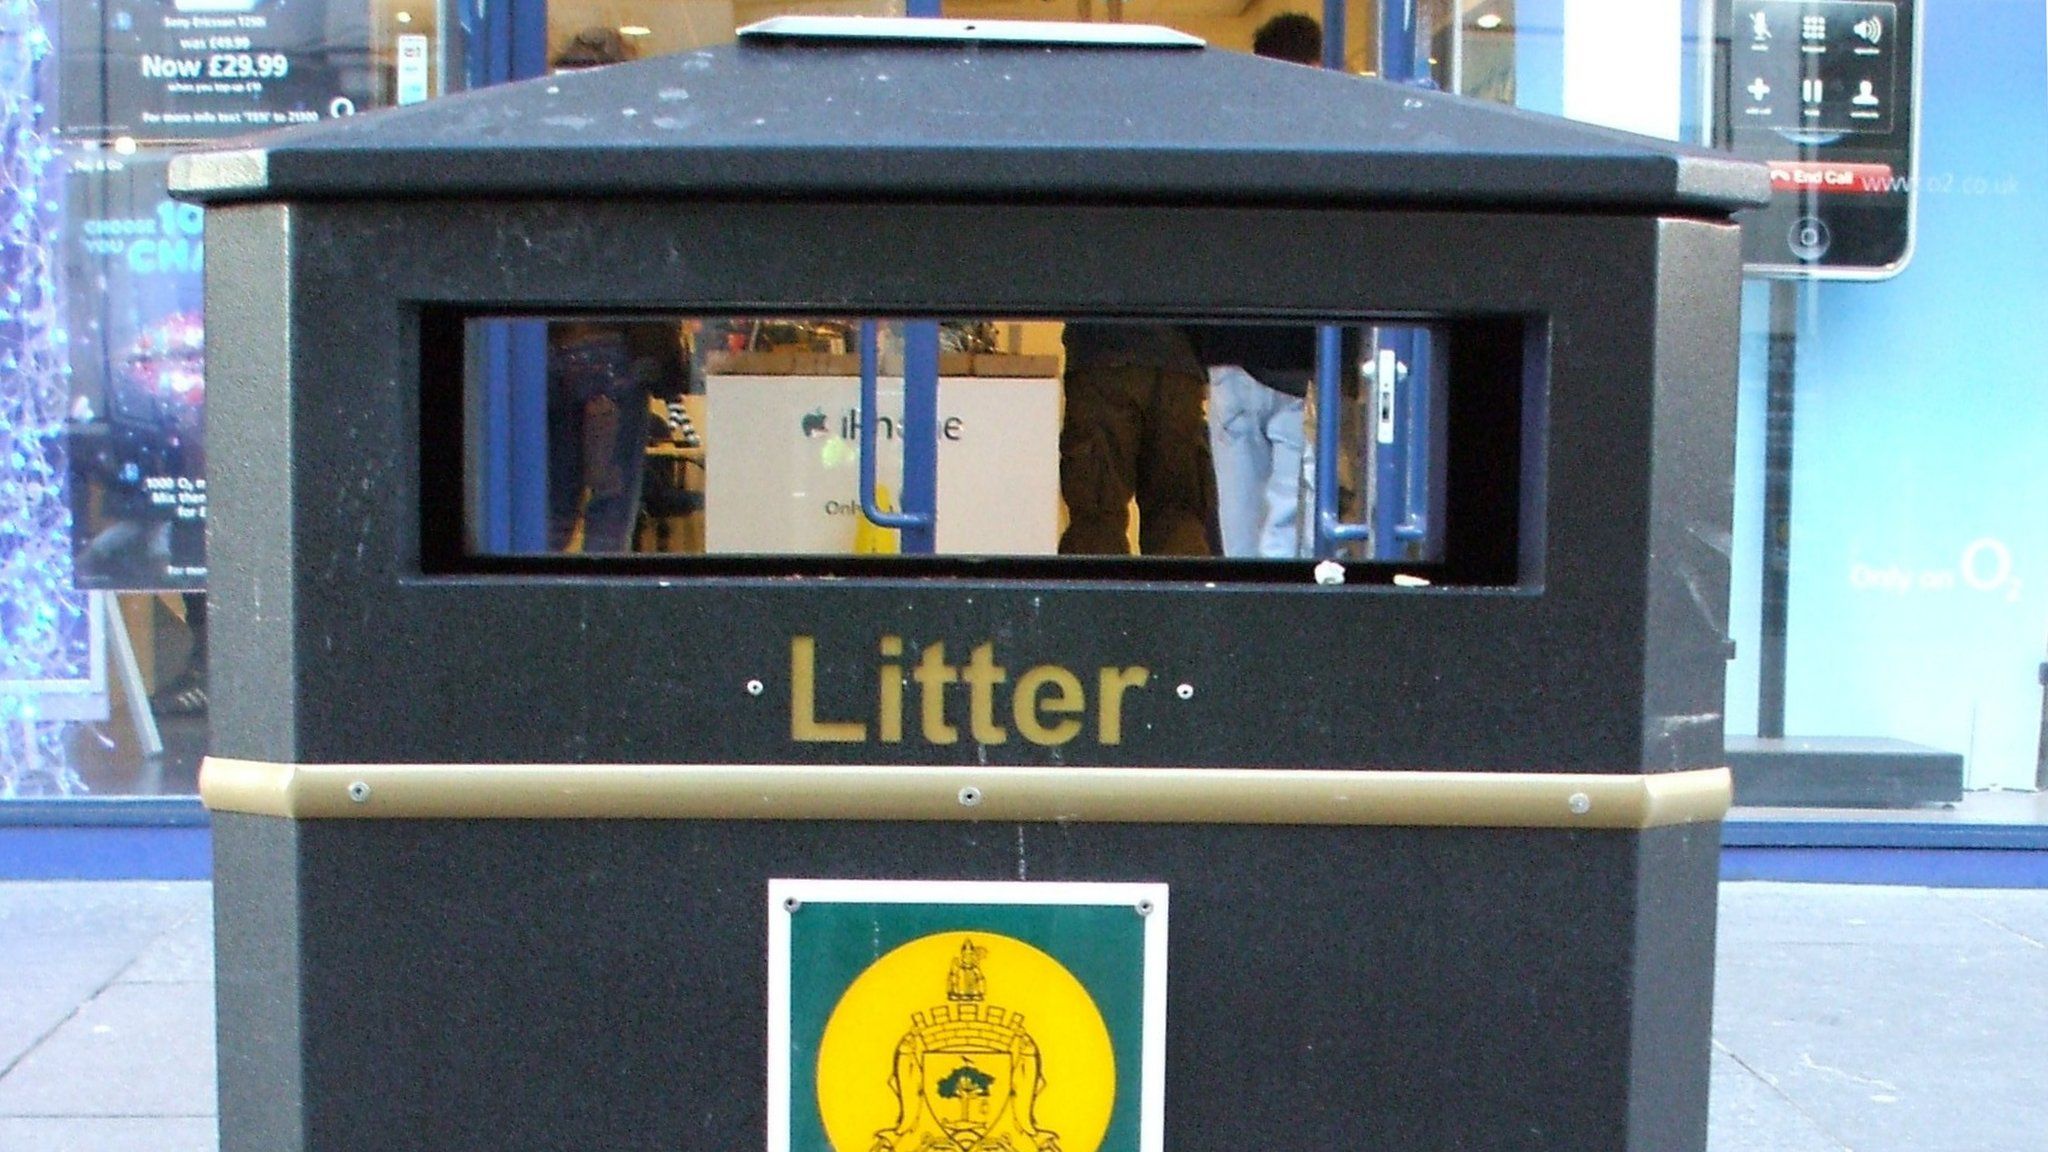 New-style litter bin